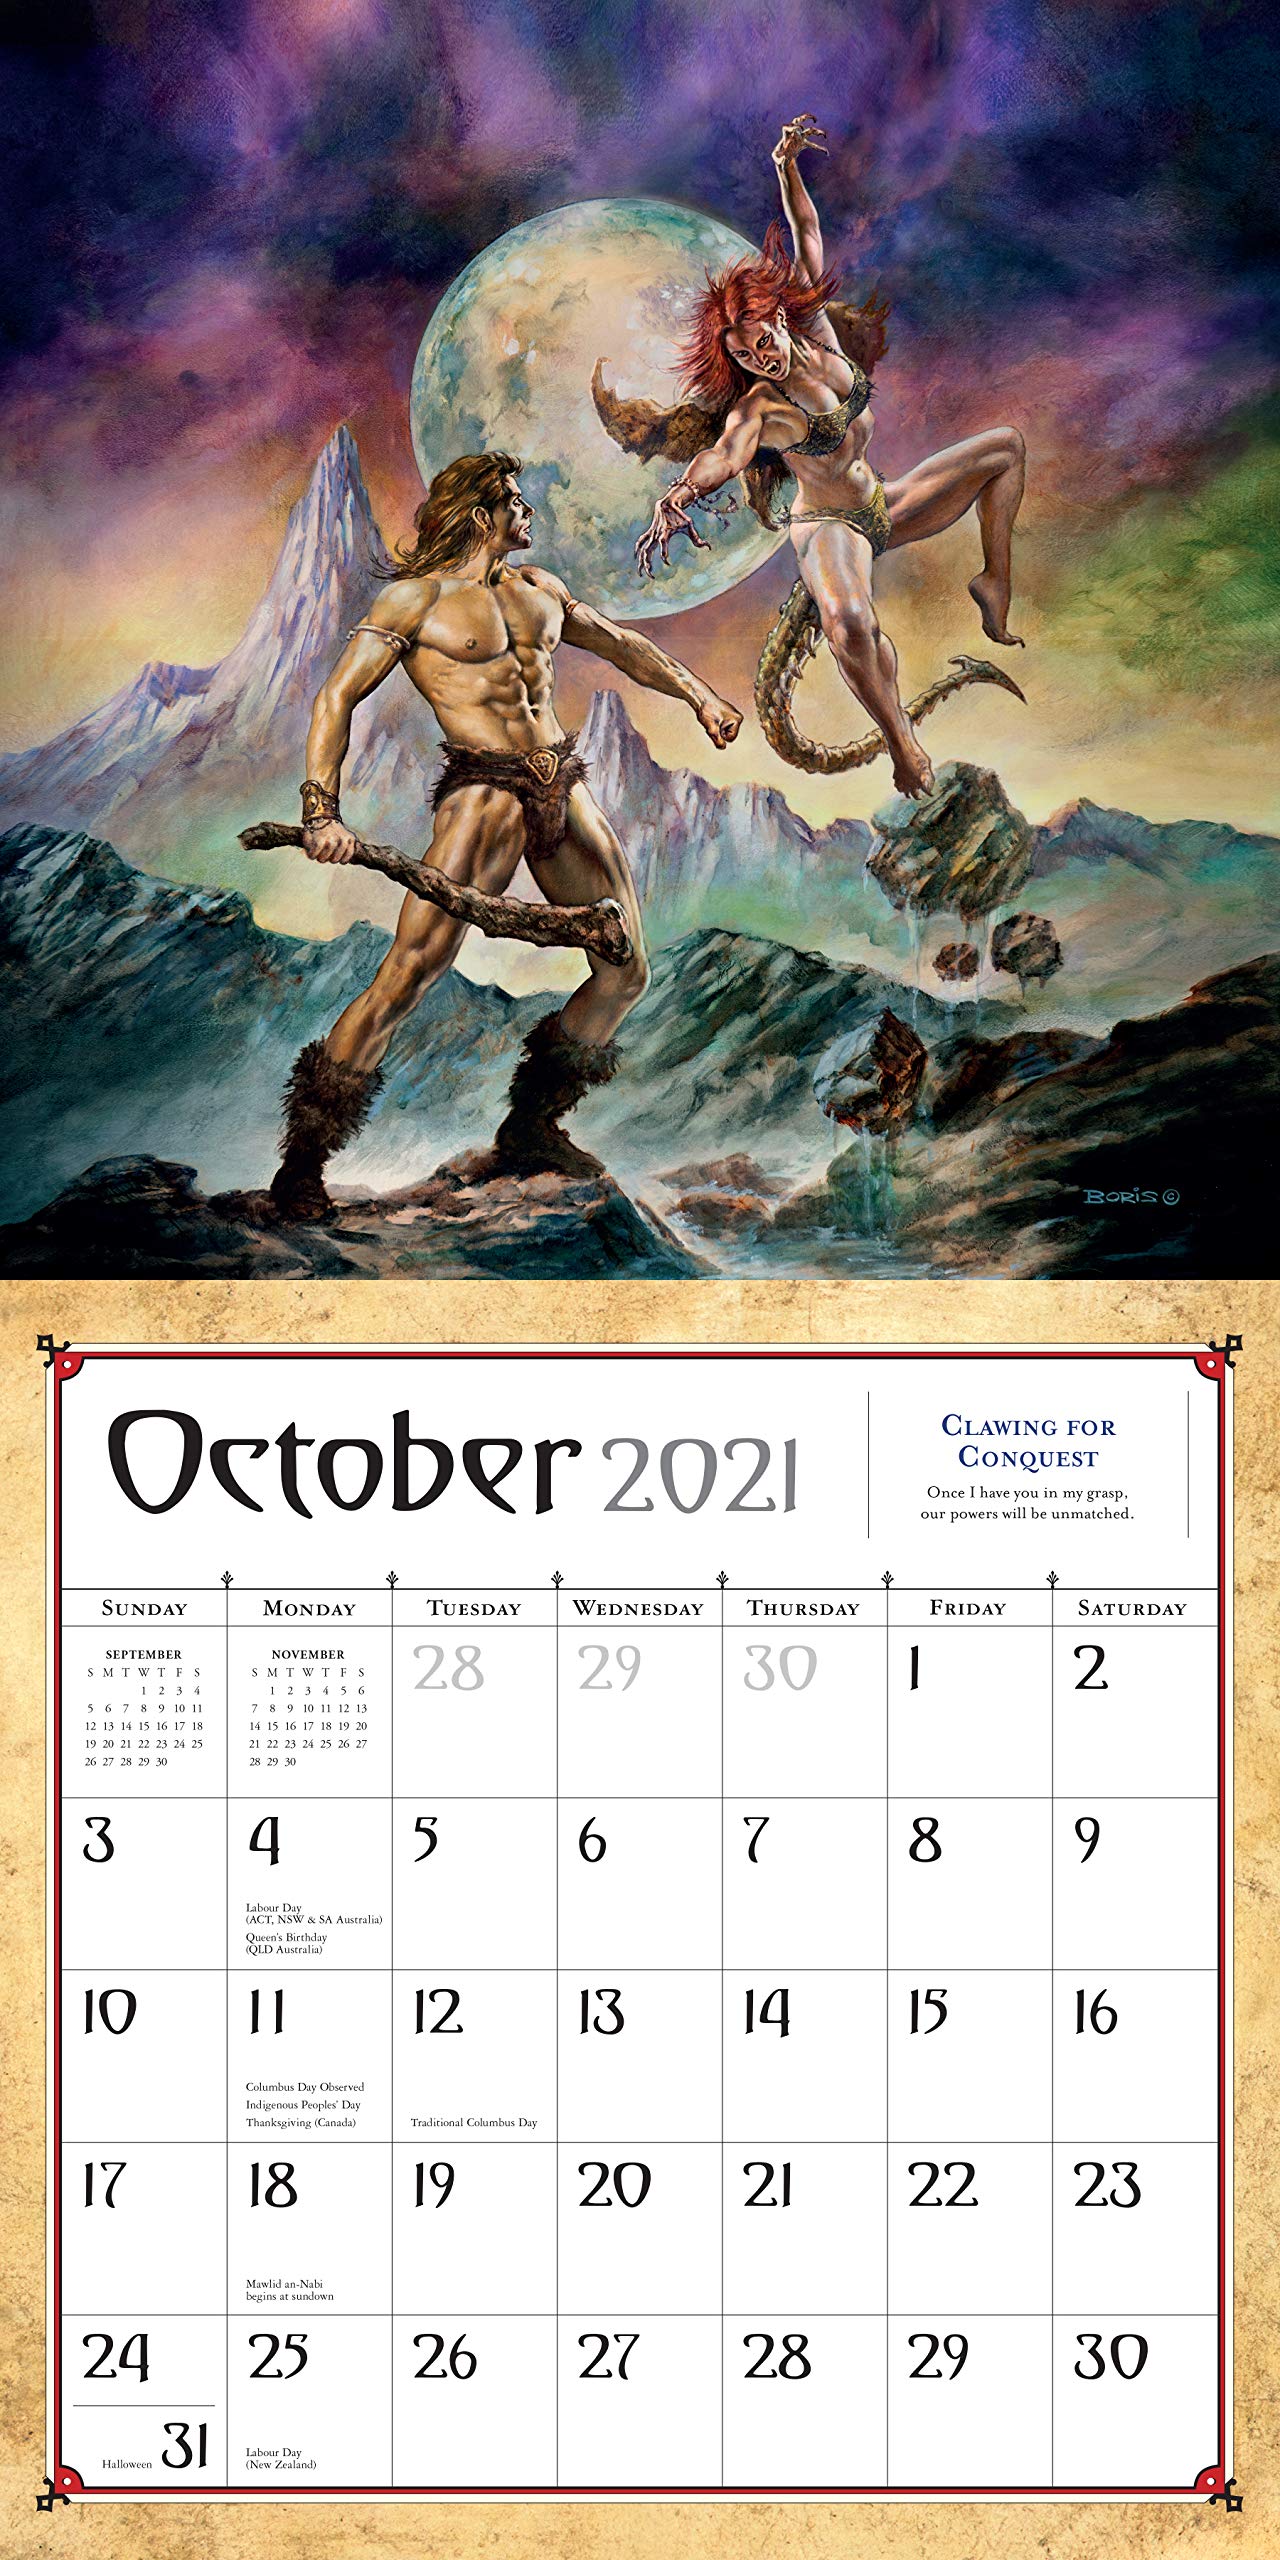 Boris Vallejo and Julie Bell's Fantasy Wall Calendar 2021